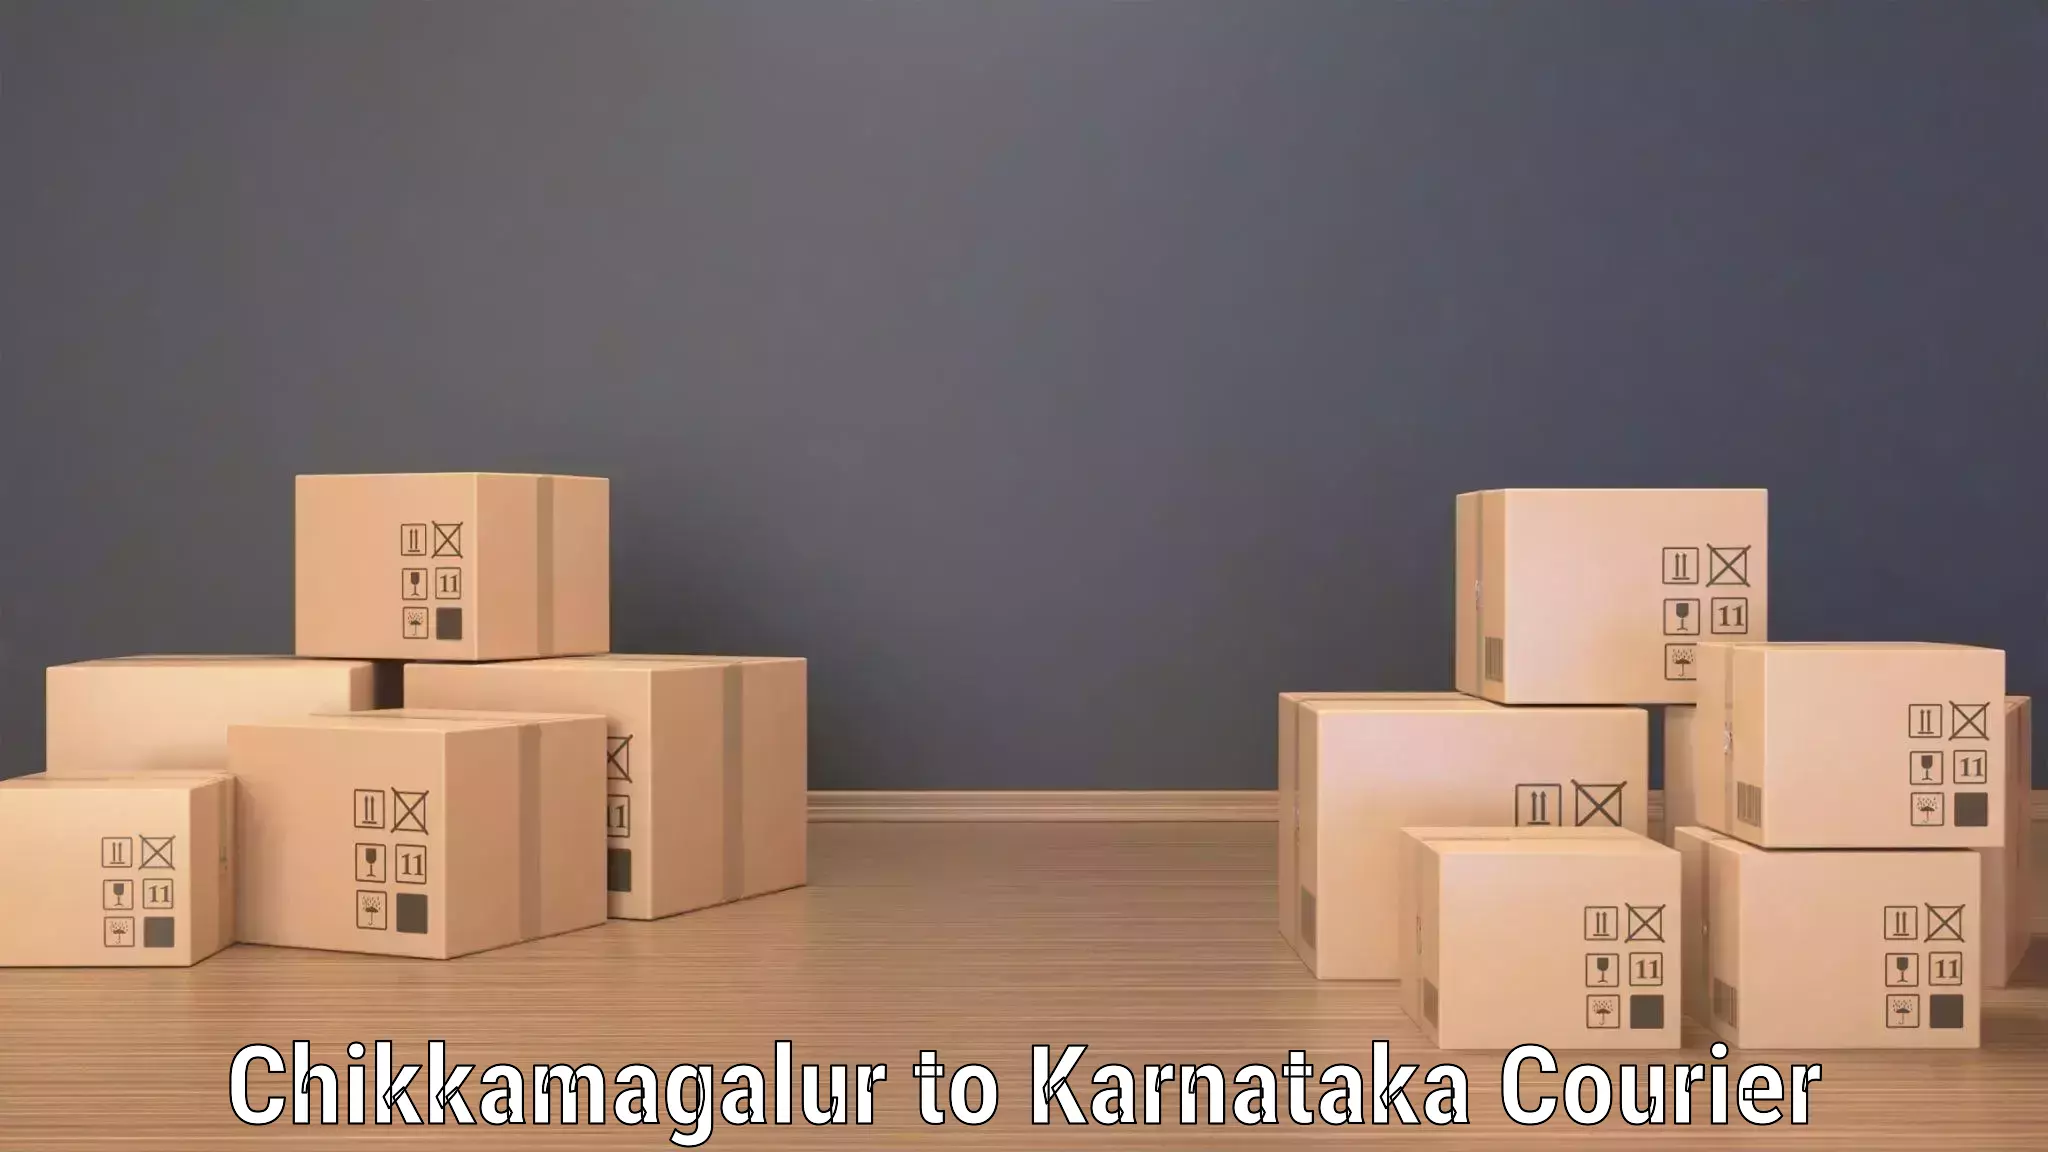 Delivery service partnership Chikkamagalur to Yenepoya Mangalore